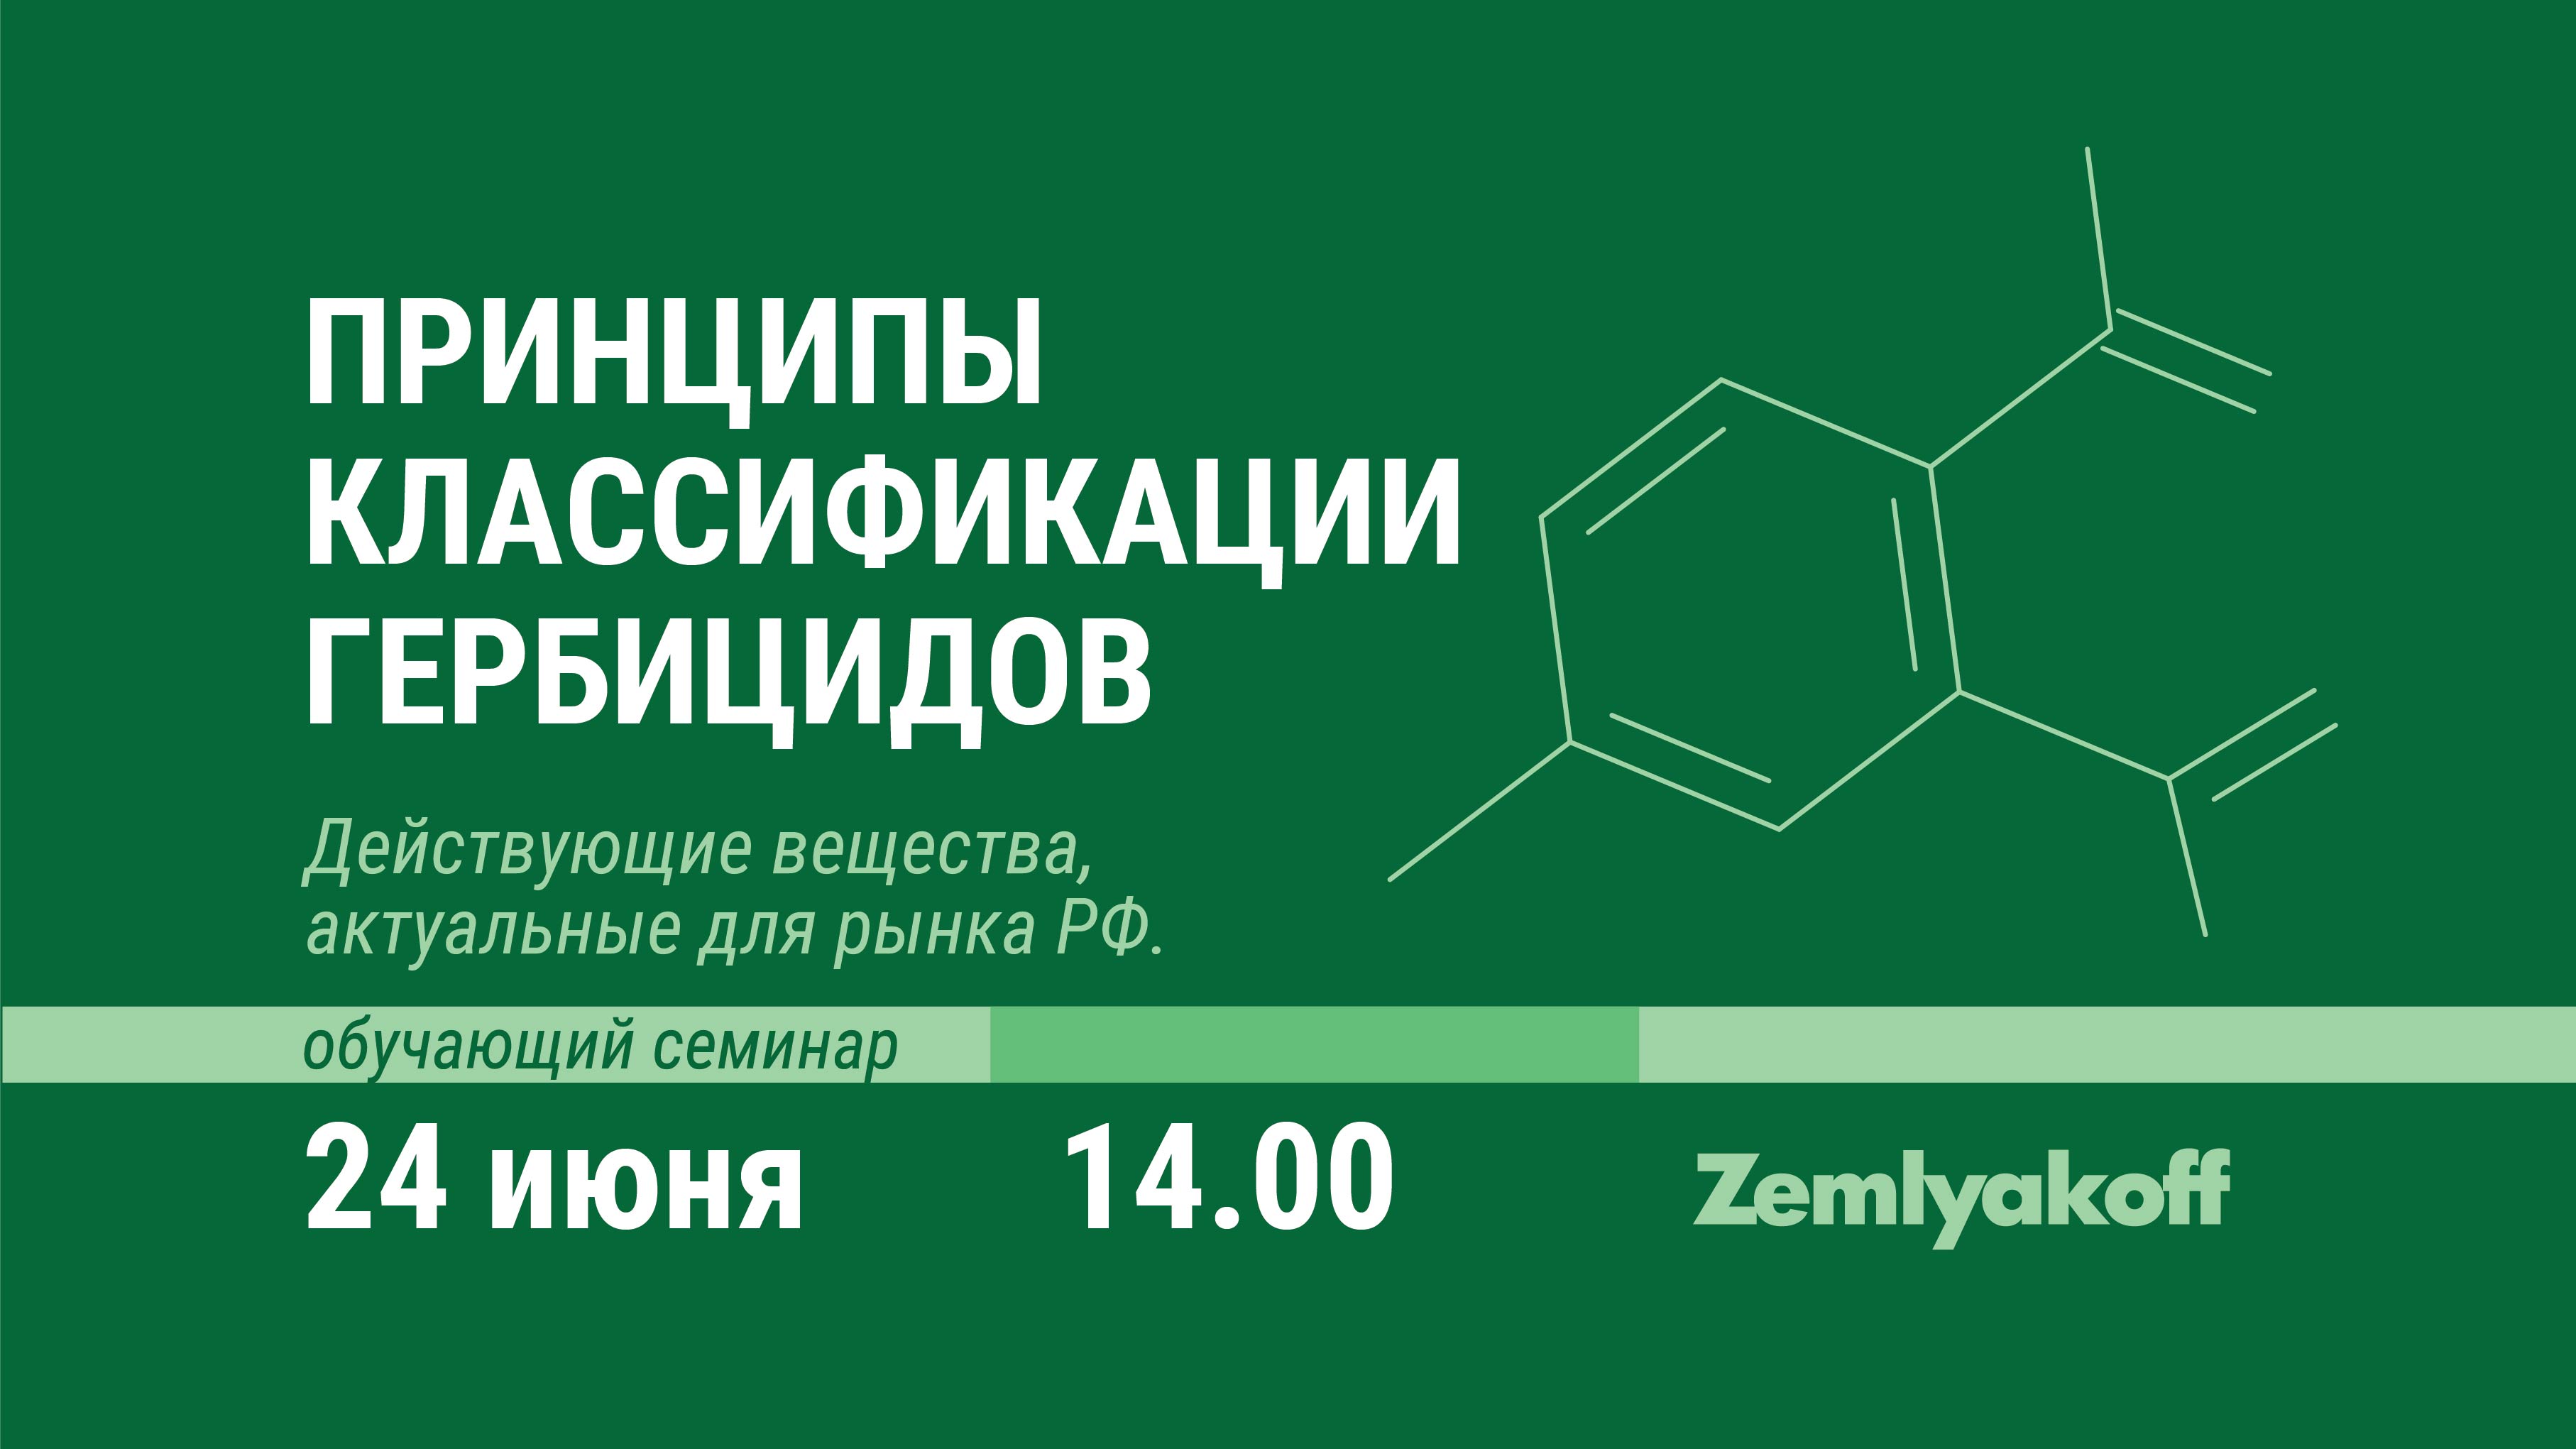 Приглашаем на онлайн-семинар "Принципы классификации гербицидов. Действующие вещества, актуальные для рынка РФ".